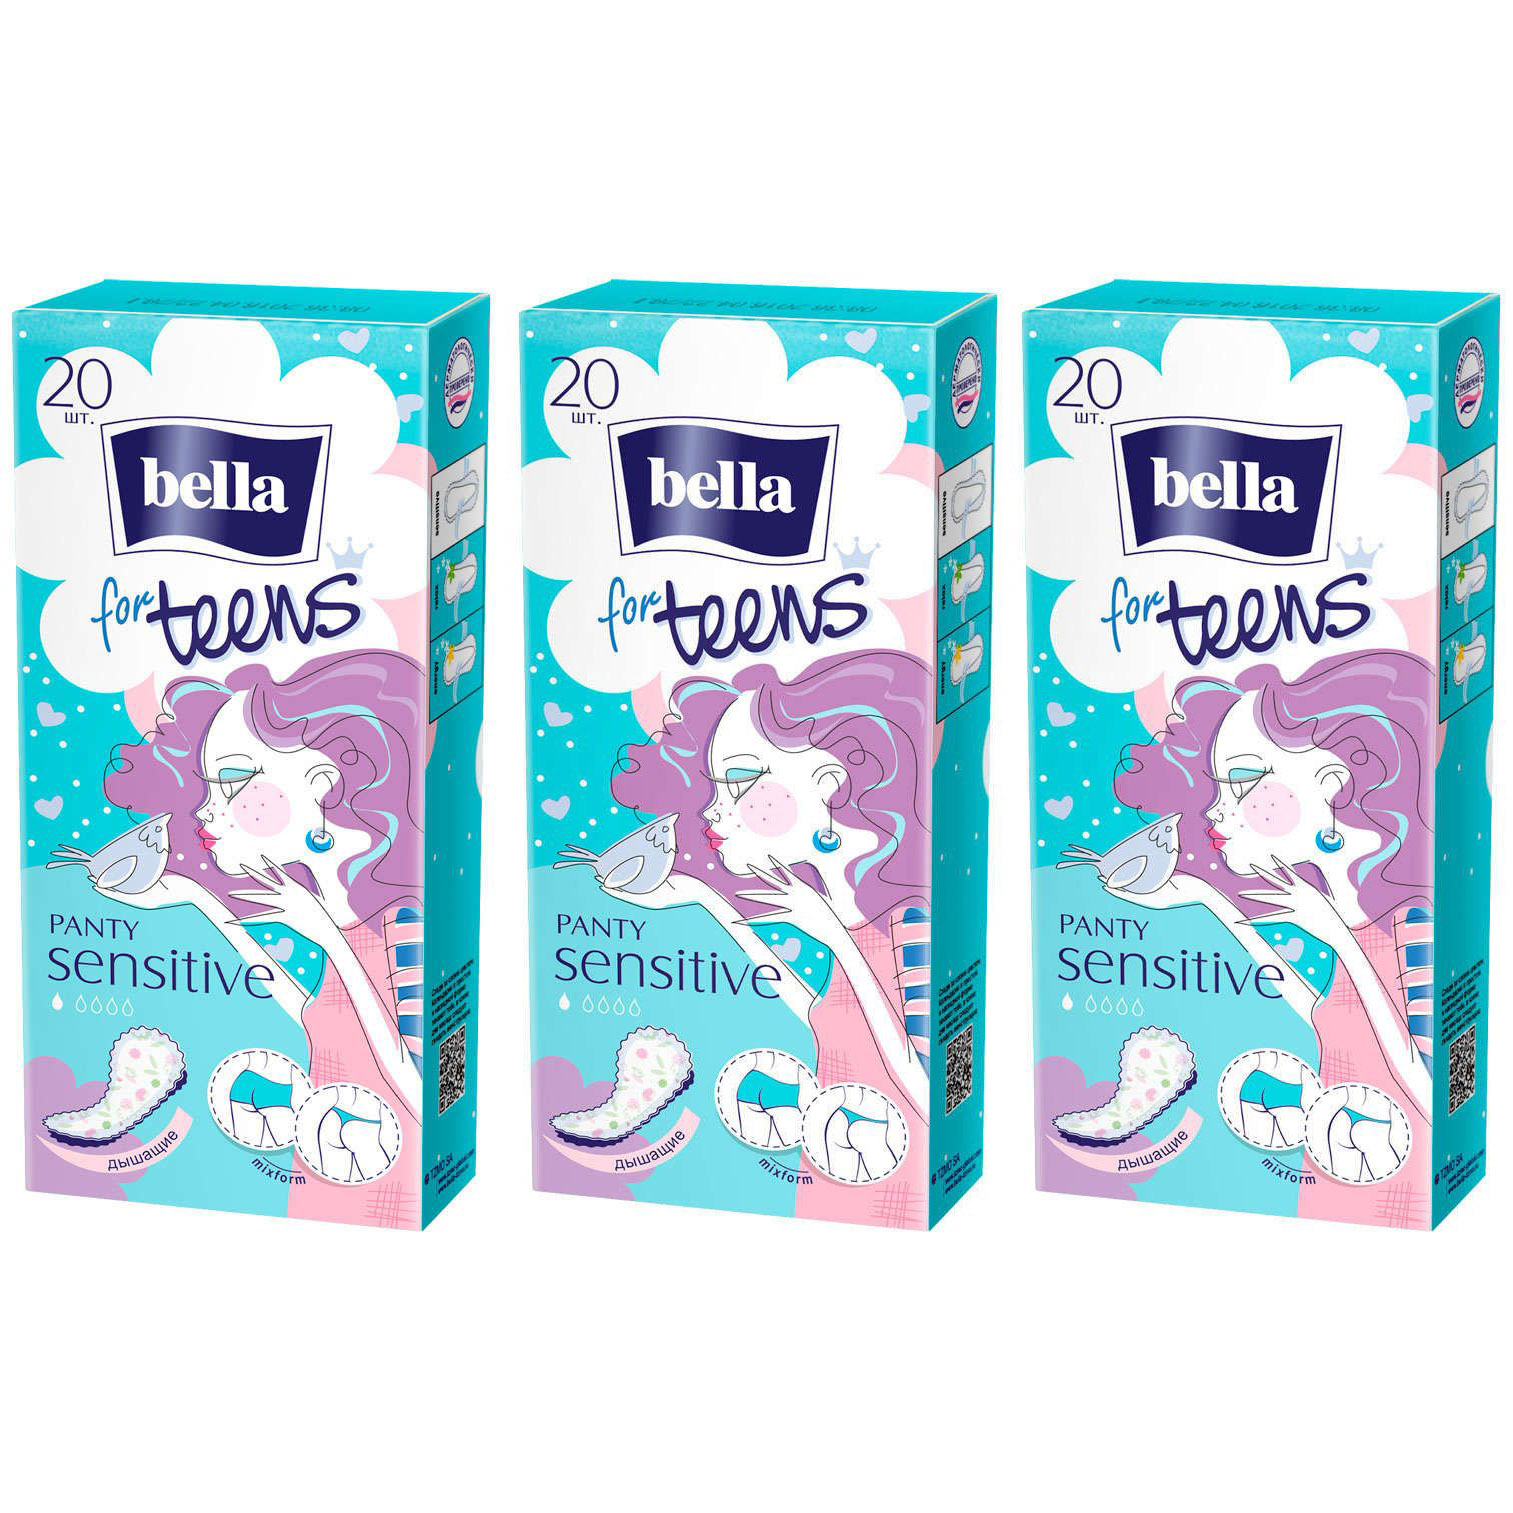 Прокладки ежедневные экстратонкие BELLA FOR TEENS Sensitive, 20шт, 3 уп. прокладки ежедневные bella for teens sensitive ультратонкие 6 упаковок по 20 шт